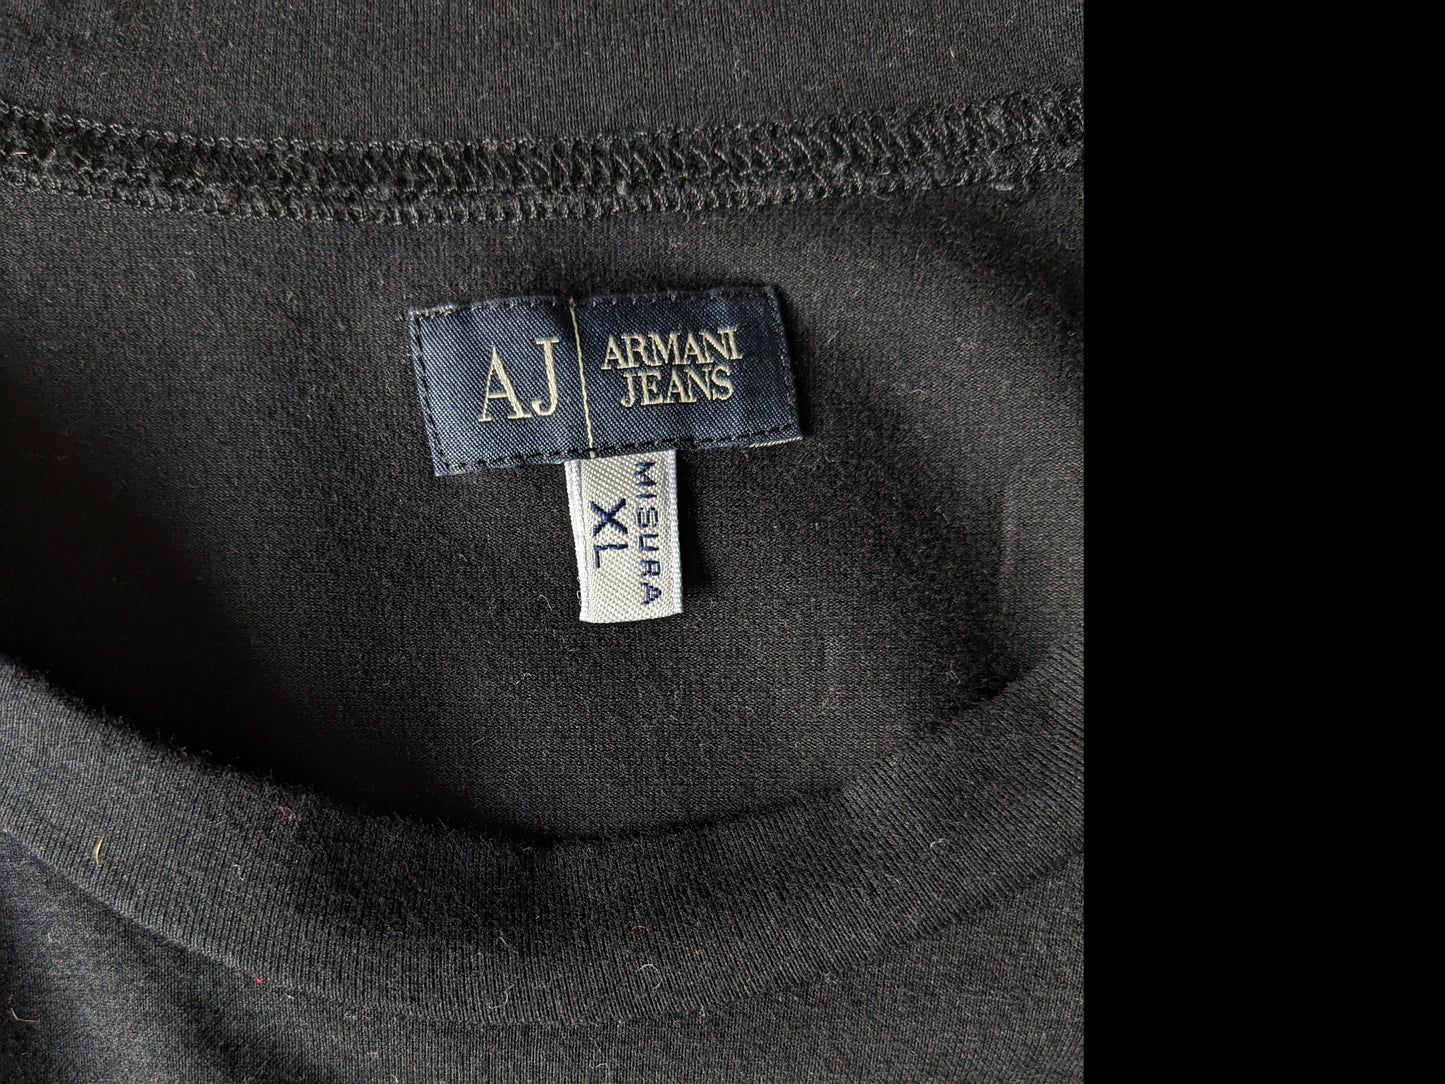 Camicia Armani Jeans. Nero con stampa. stirata. Taglia XL.